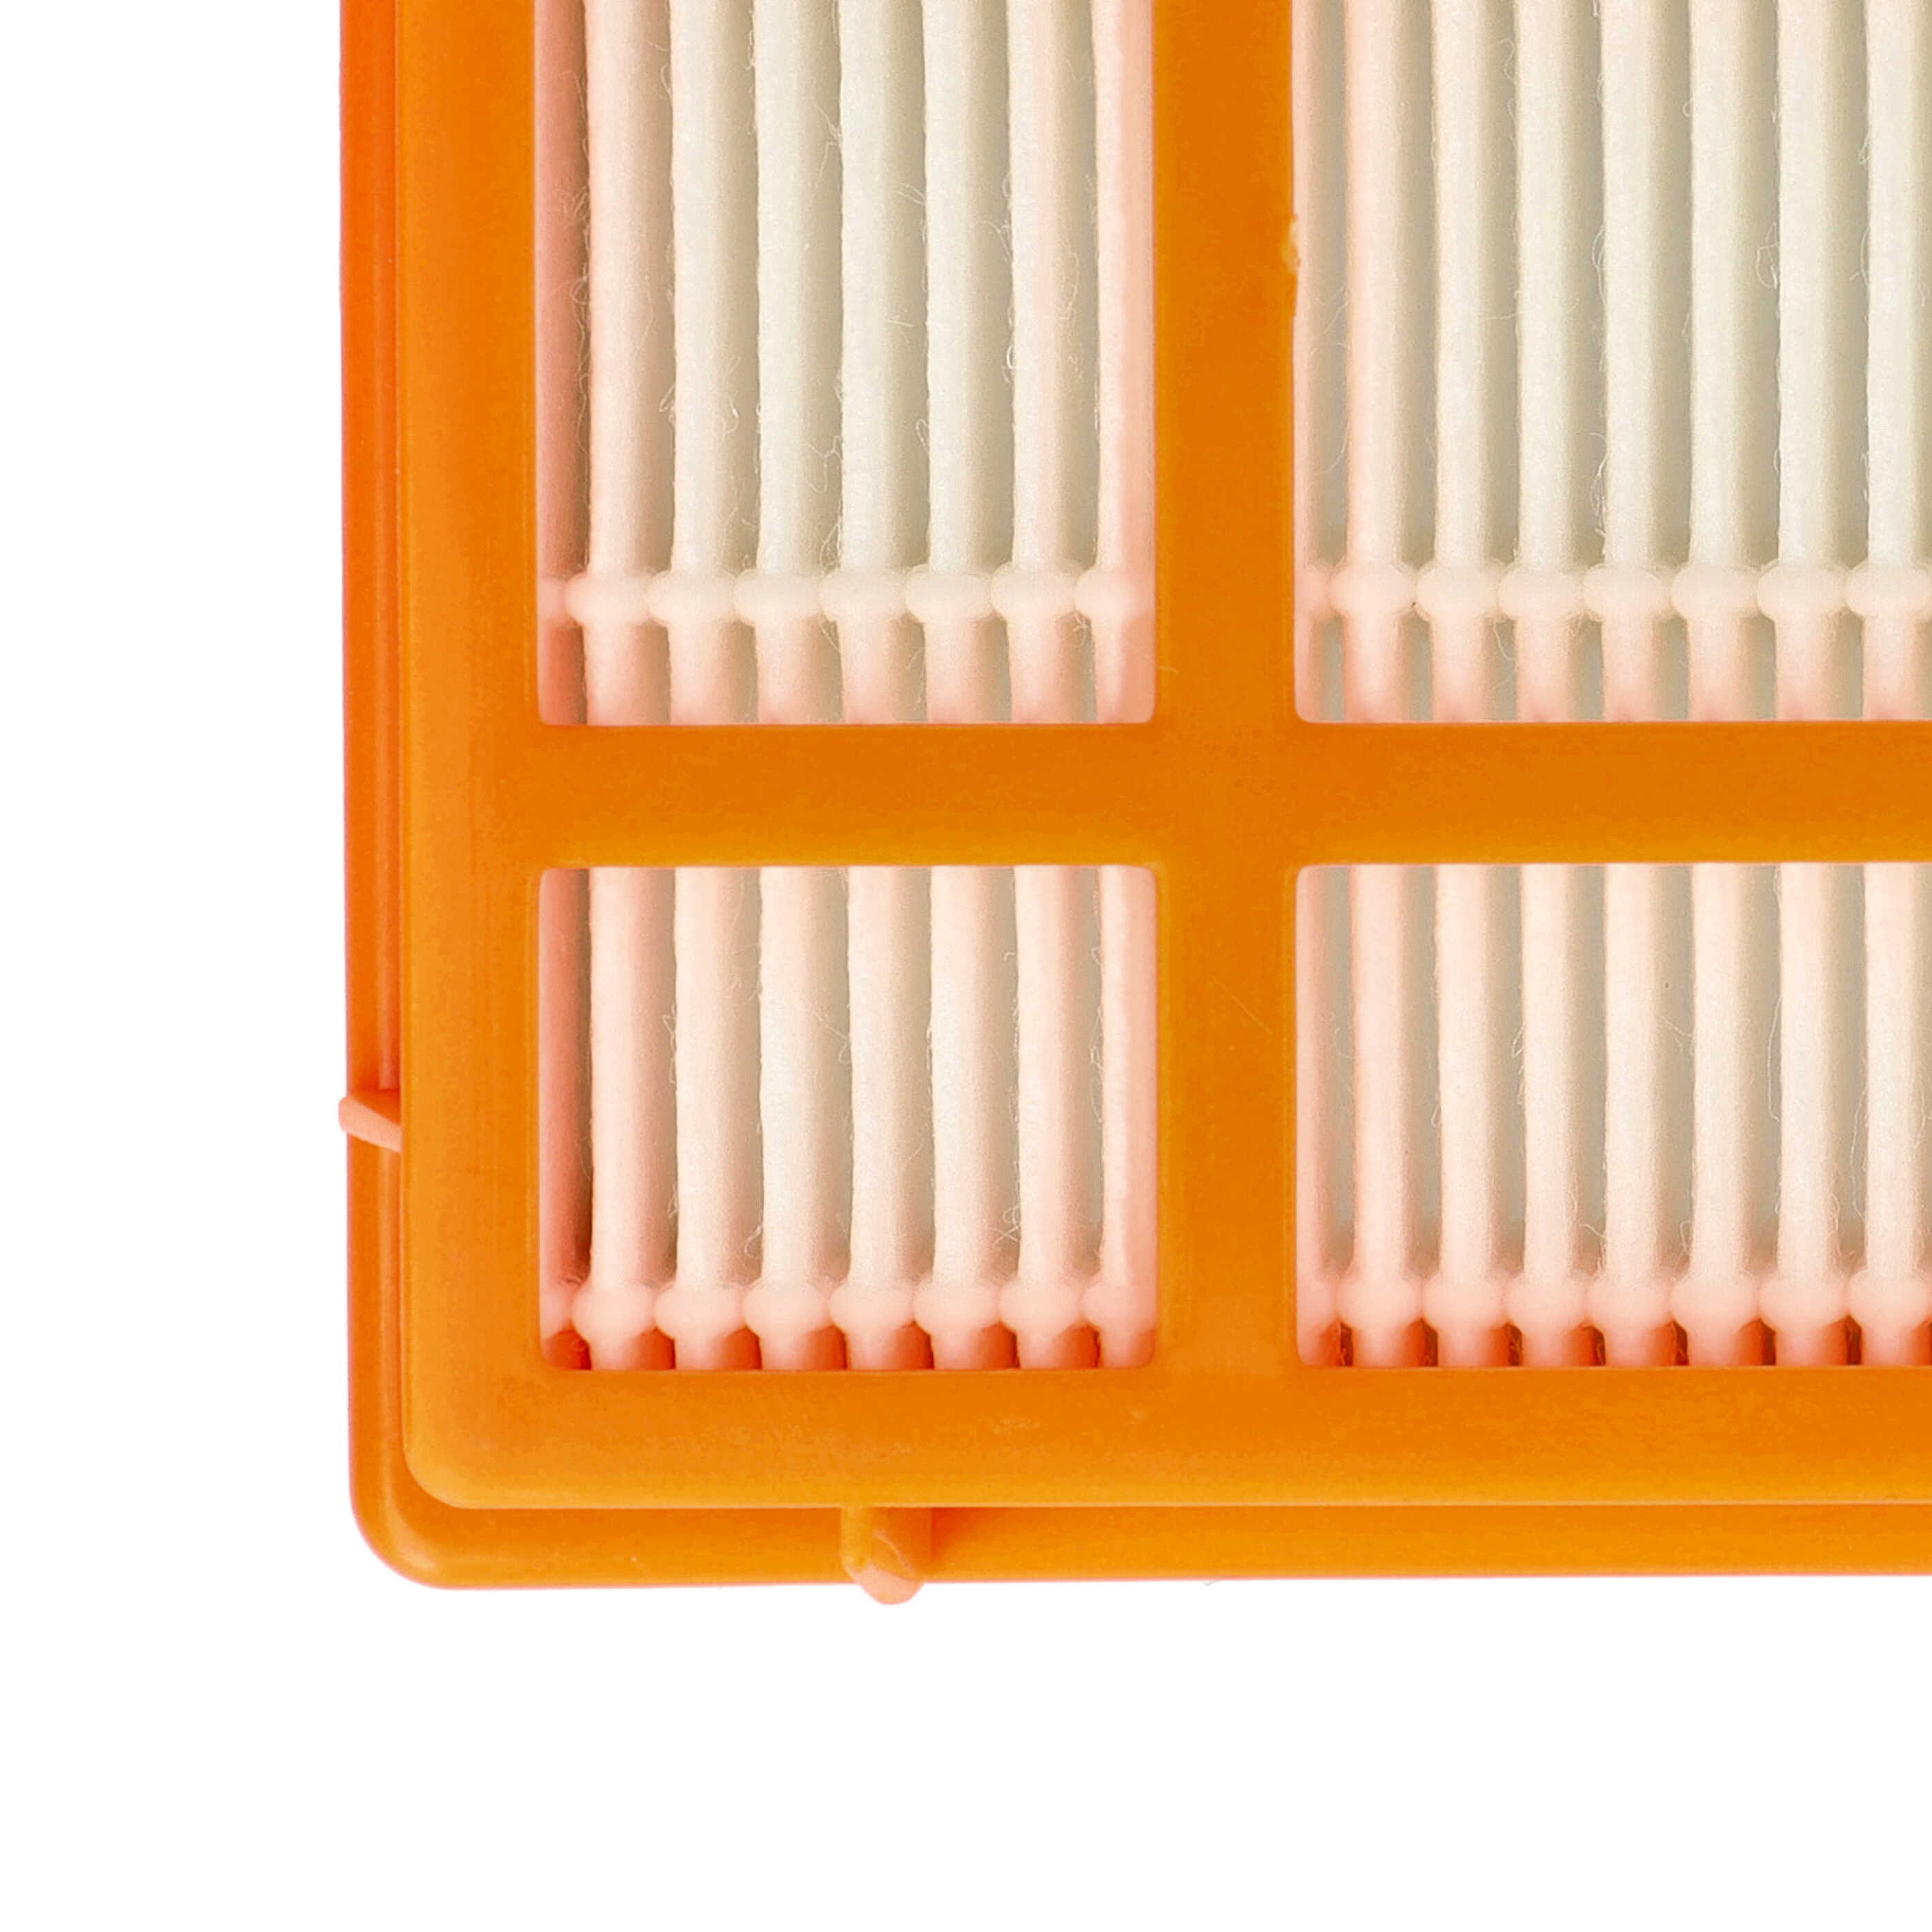 Filtro sostituisce AEG AEF 139 per aspirapolvere - filtro HEPA, arancione / bianco